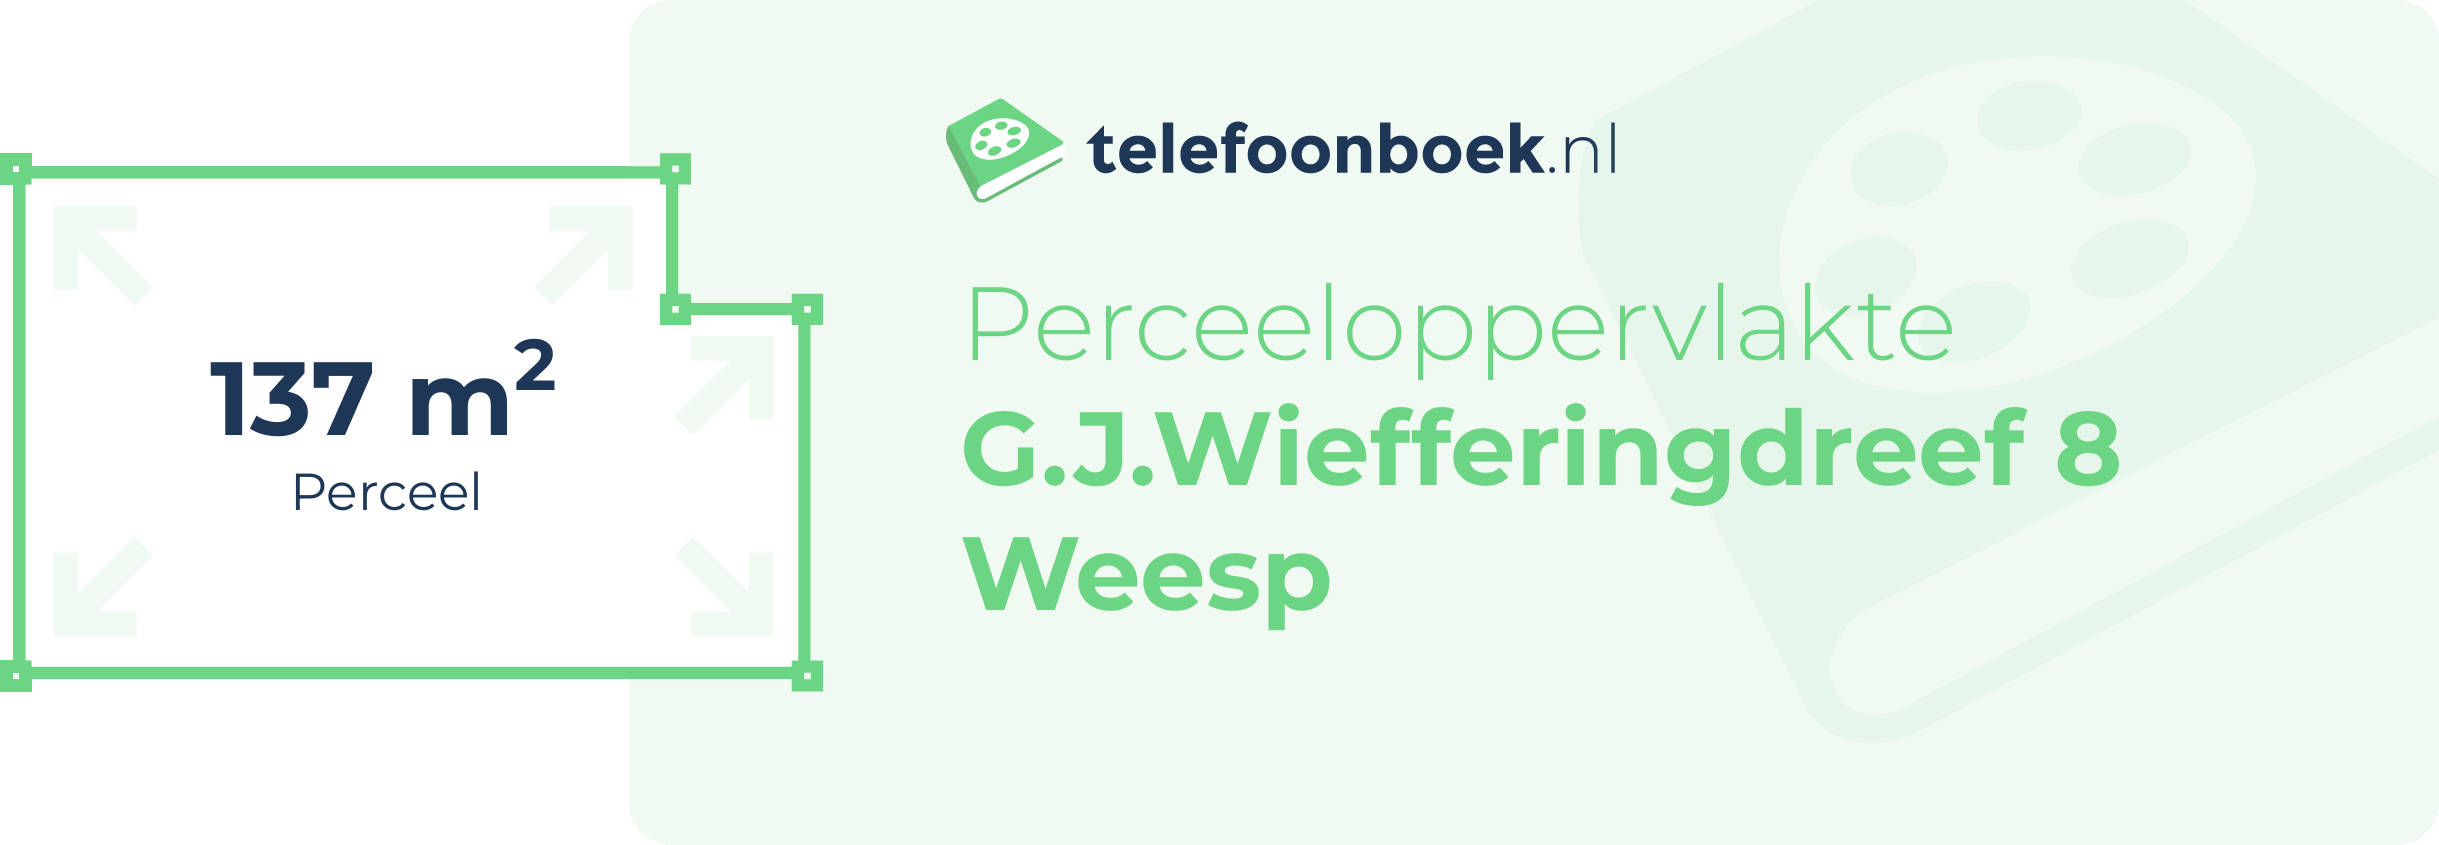 Perceeloppervlakte G.J.Wiefferingdreef 8 Weesp